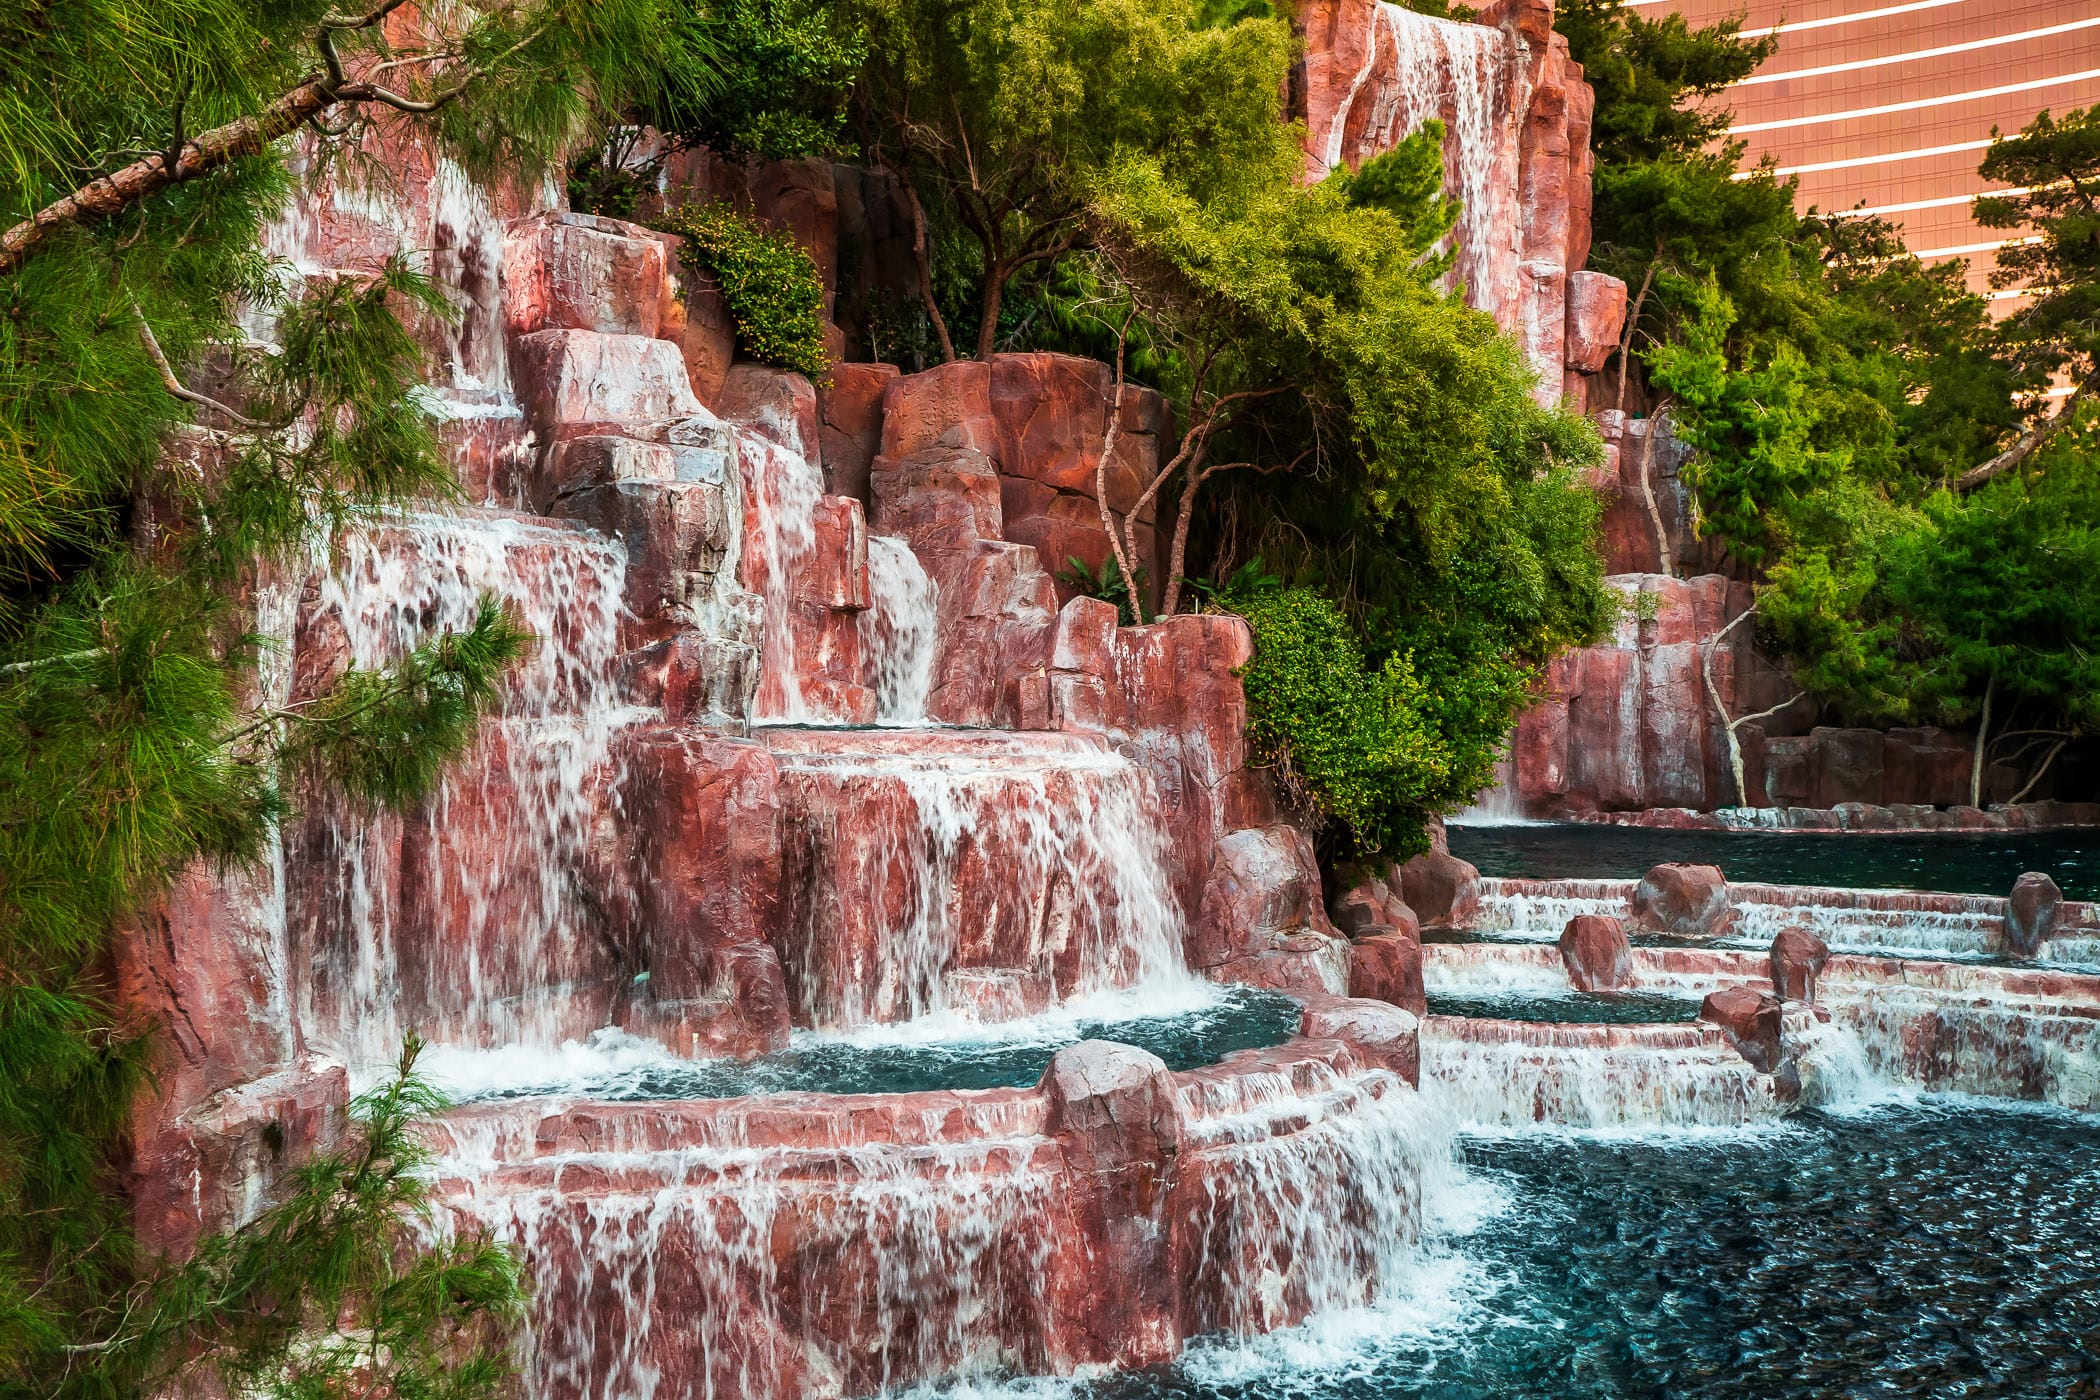 The waterfalls outside of the Wynn Las Vegas Hotel & Casino.